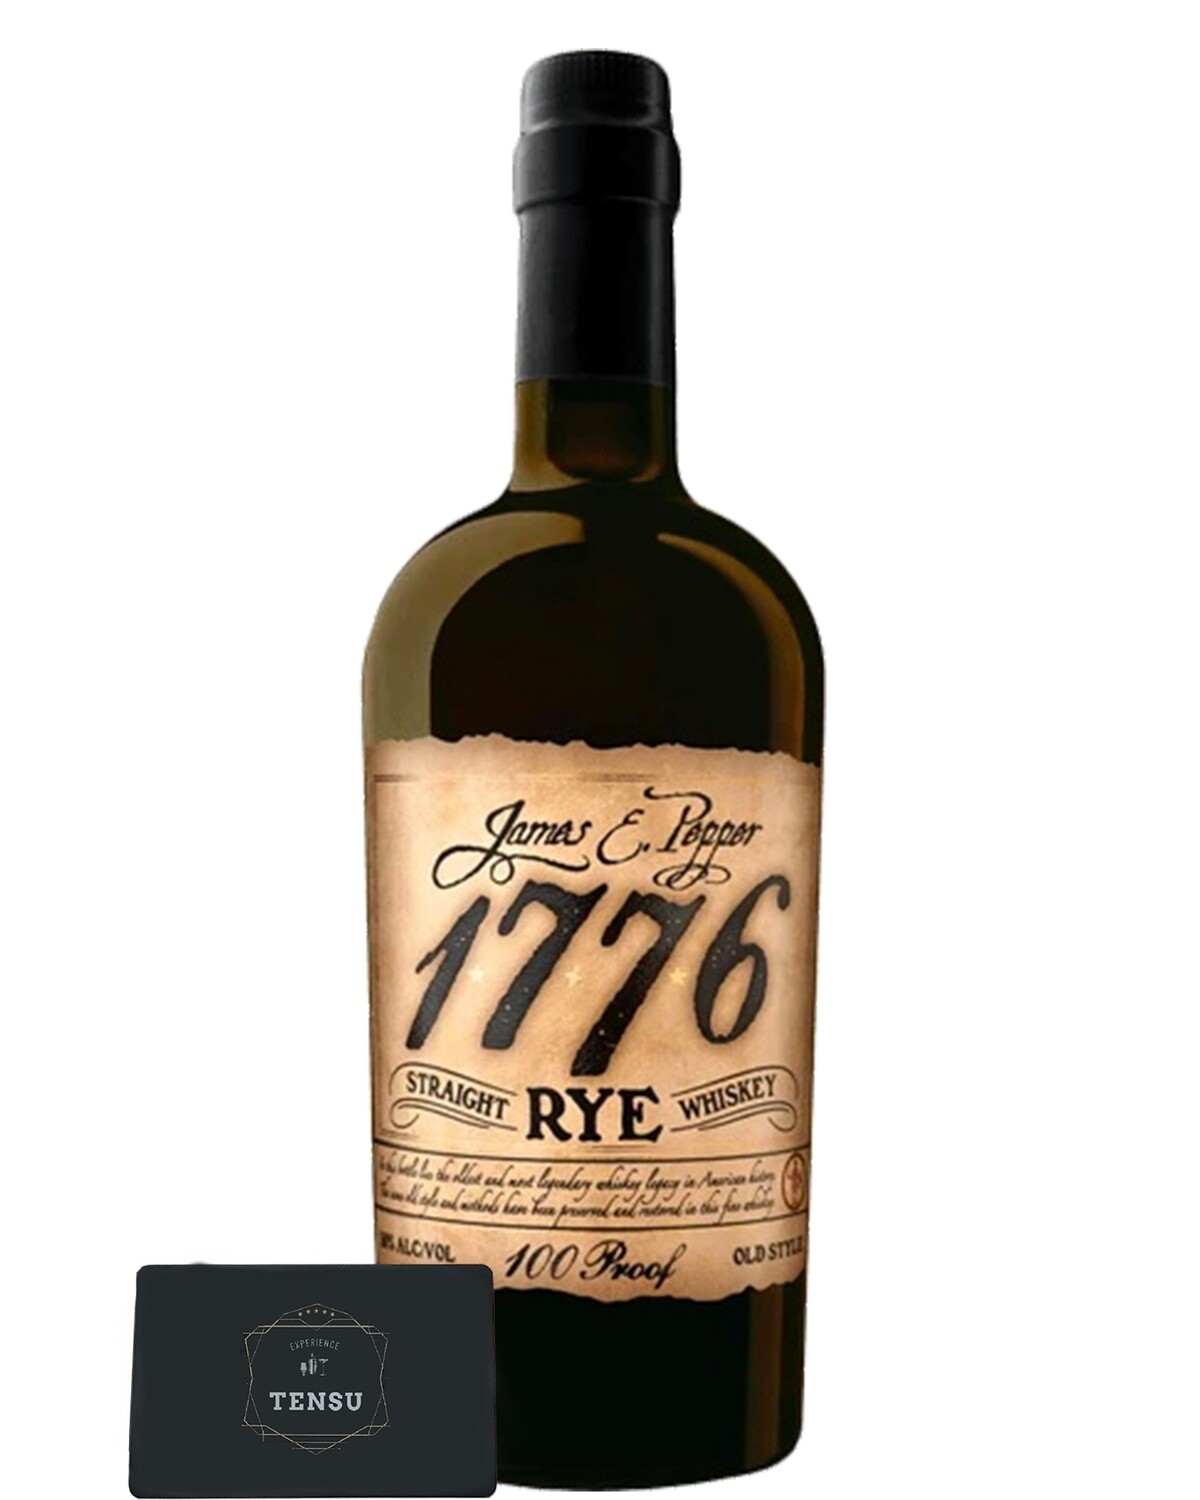 1776 James E Pepper Straight Rye Whiskey 46.0